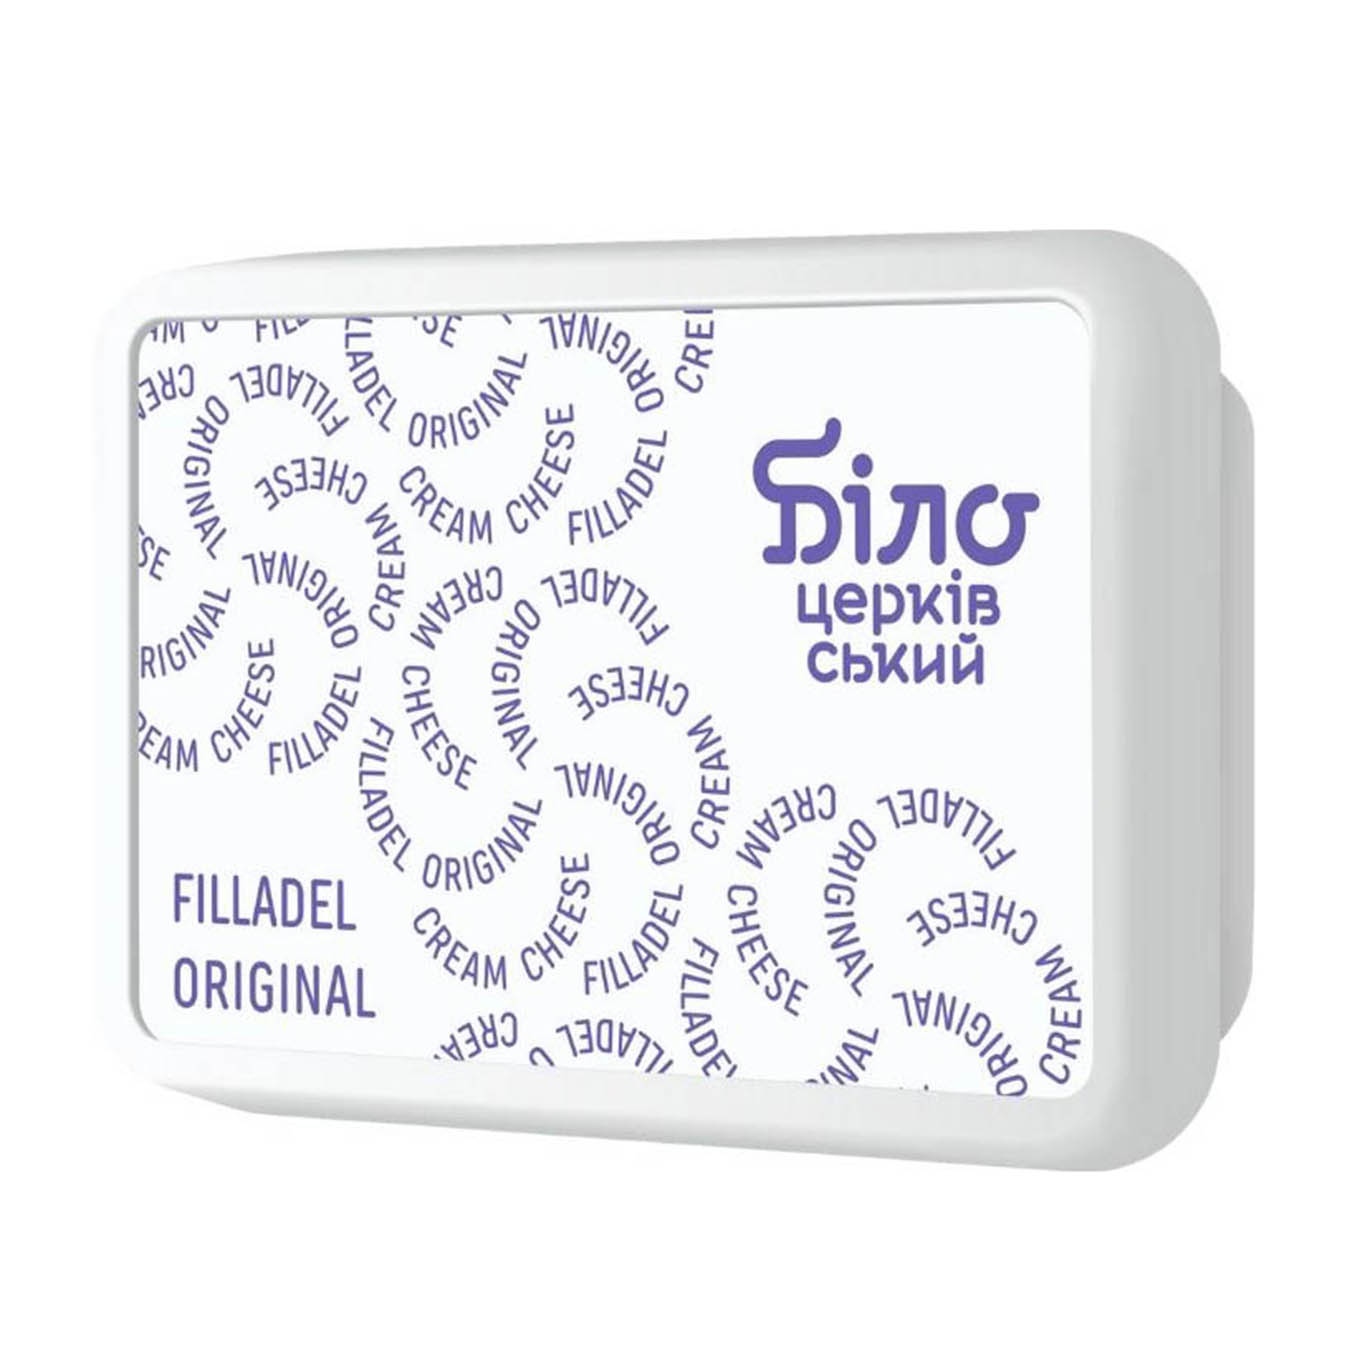 Крем-сыр БИЛО Filladel Original 60% 180г